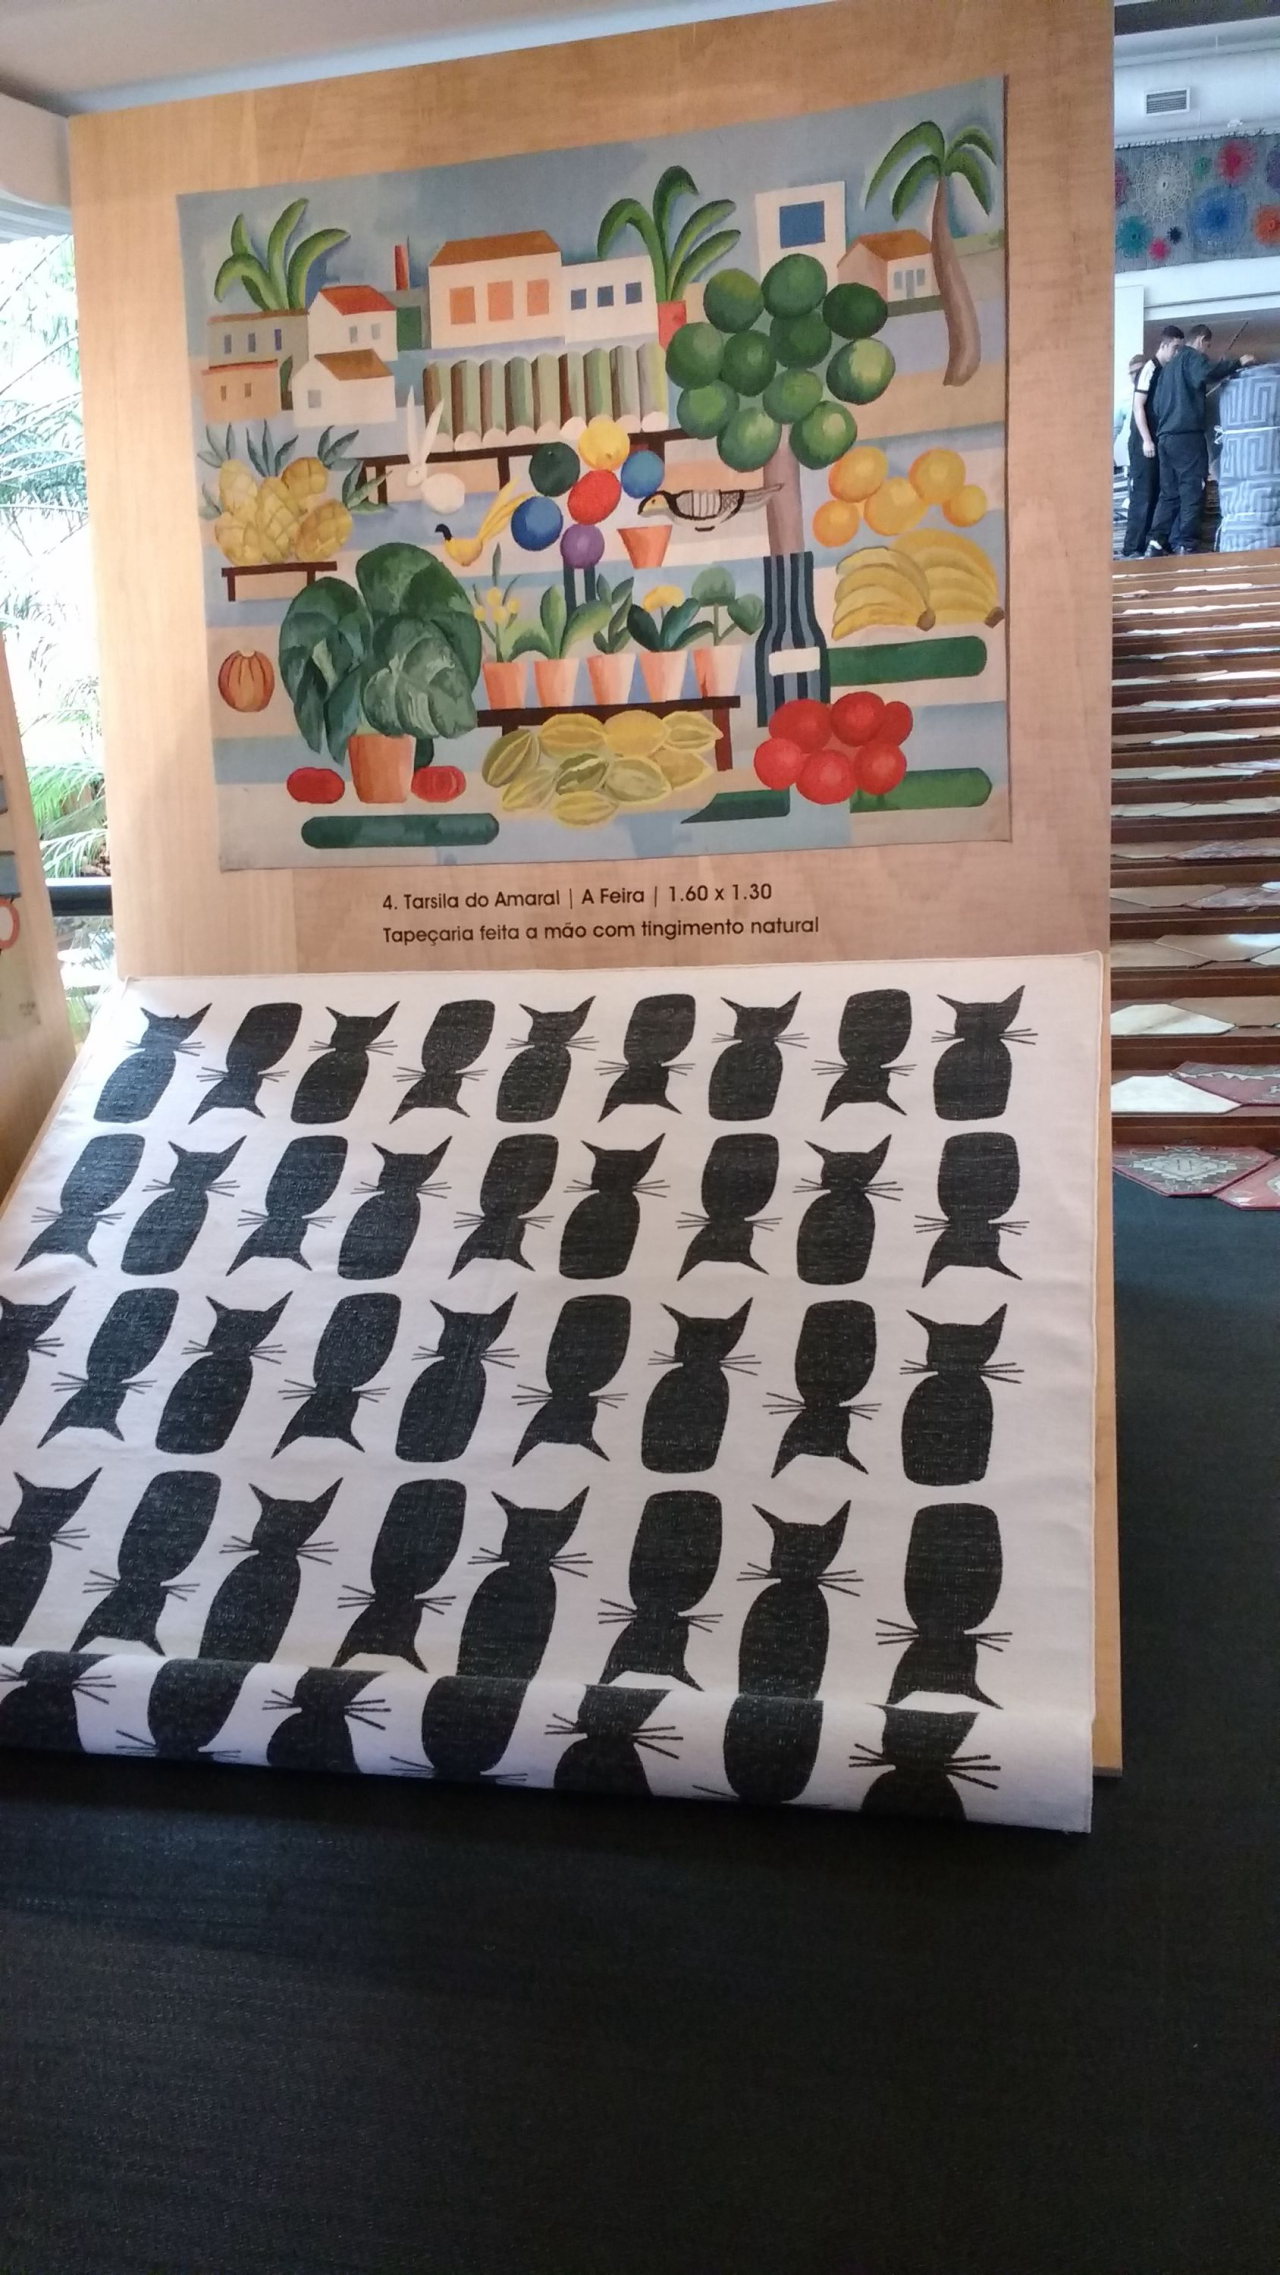 A By Kami apresentou uma linha em homenagem a Tarsila do Amaral. Partes de obras de uma das artistas mais importantes do país foram reproduzidas em tapeçaria. Além disso, foram criadas padronagens com apenas um elemento de uma obra (caso do gatinho).<br>Foto: Daliane Nogueira / Gazeta do Povo